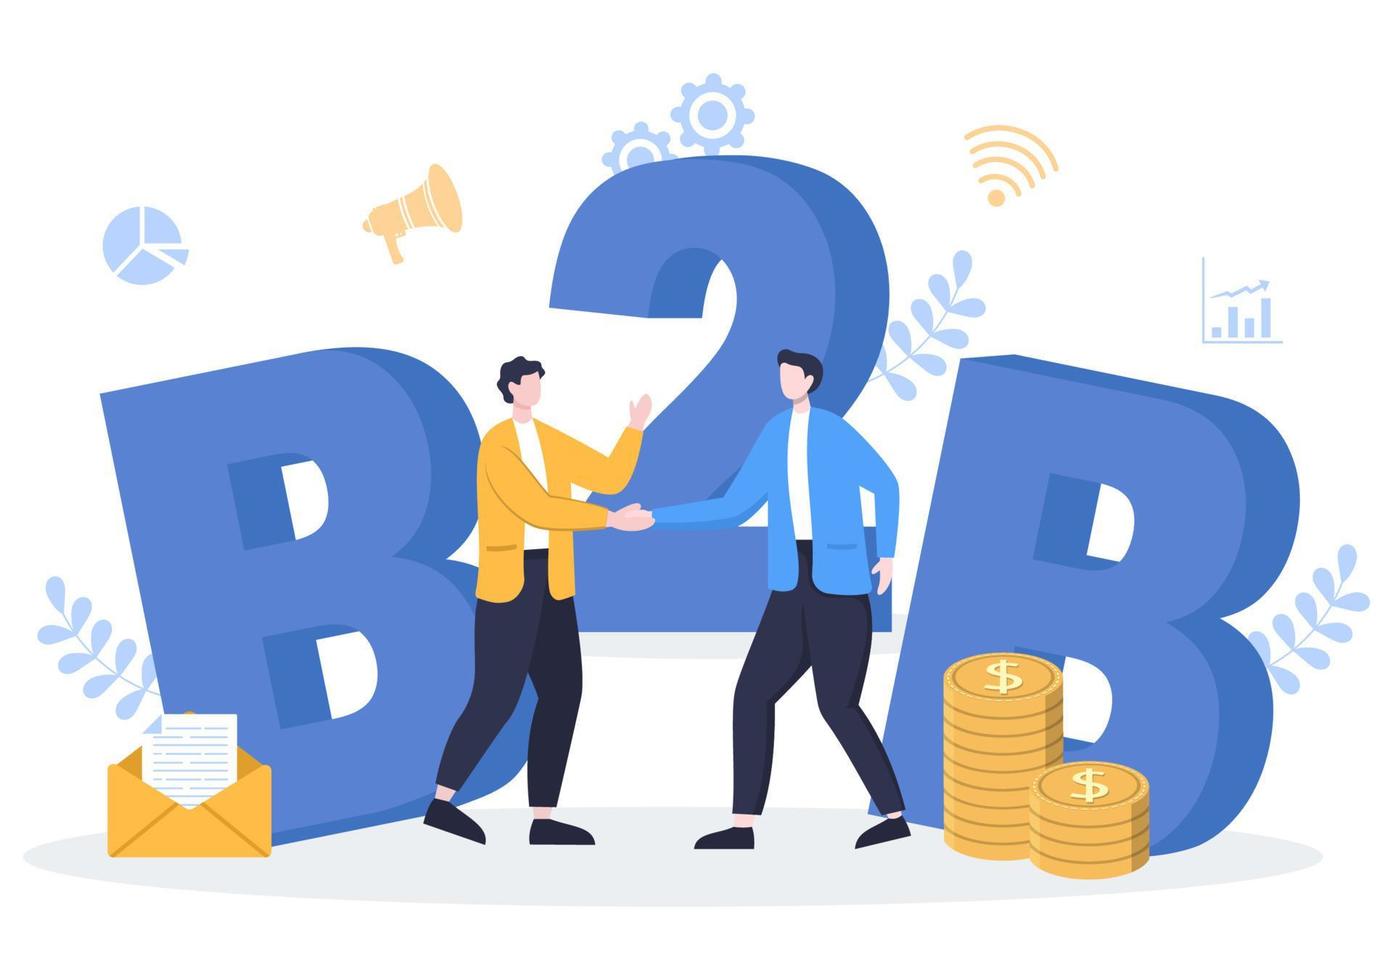 b2b eller business to business marknadsföring vektorillustration. affärsmän och klient skakar hand efter fastställd strategi, försäljning och handel för överenskommen transaktion vektor